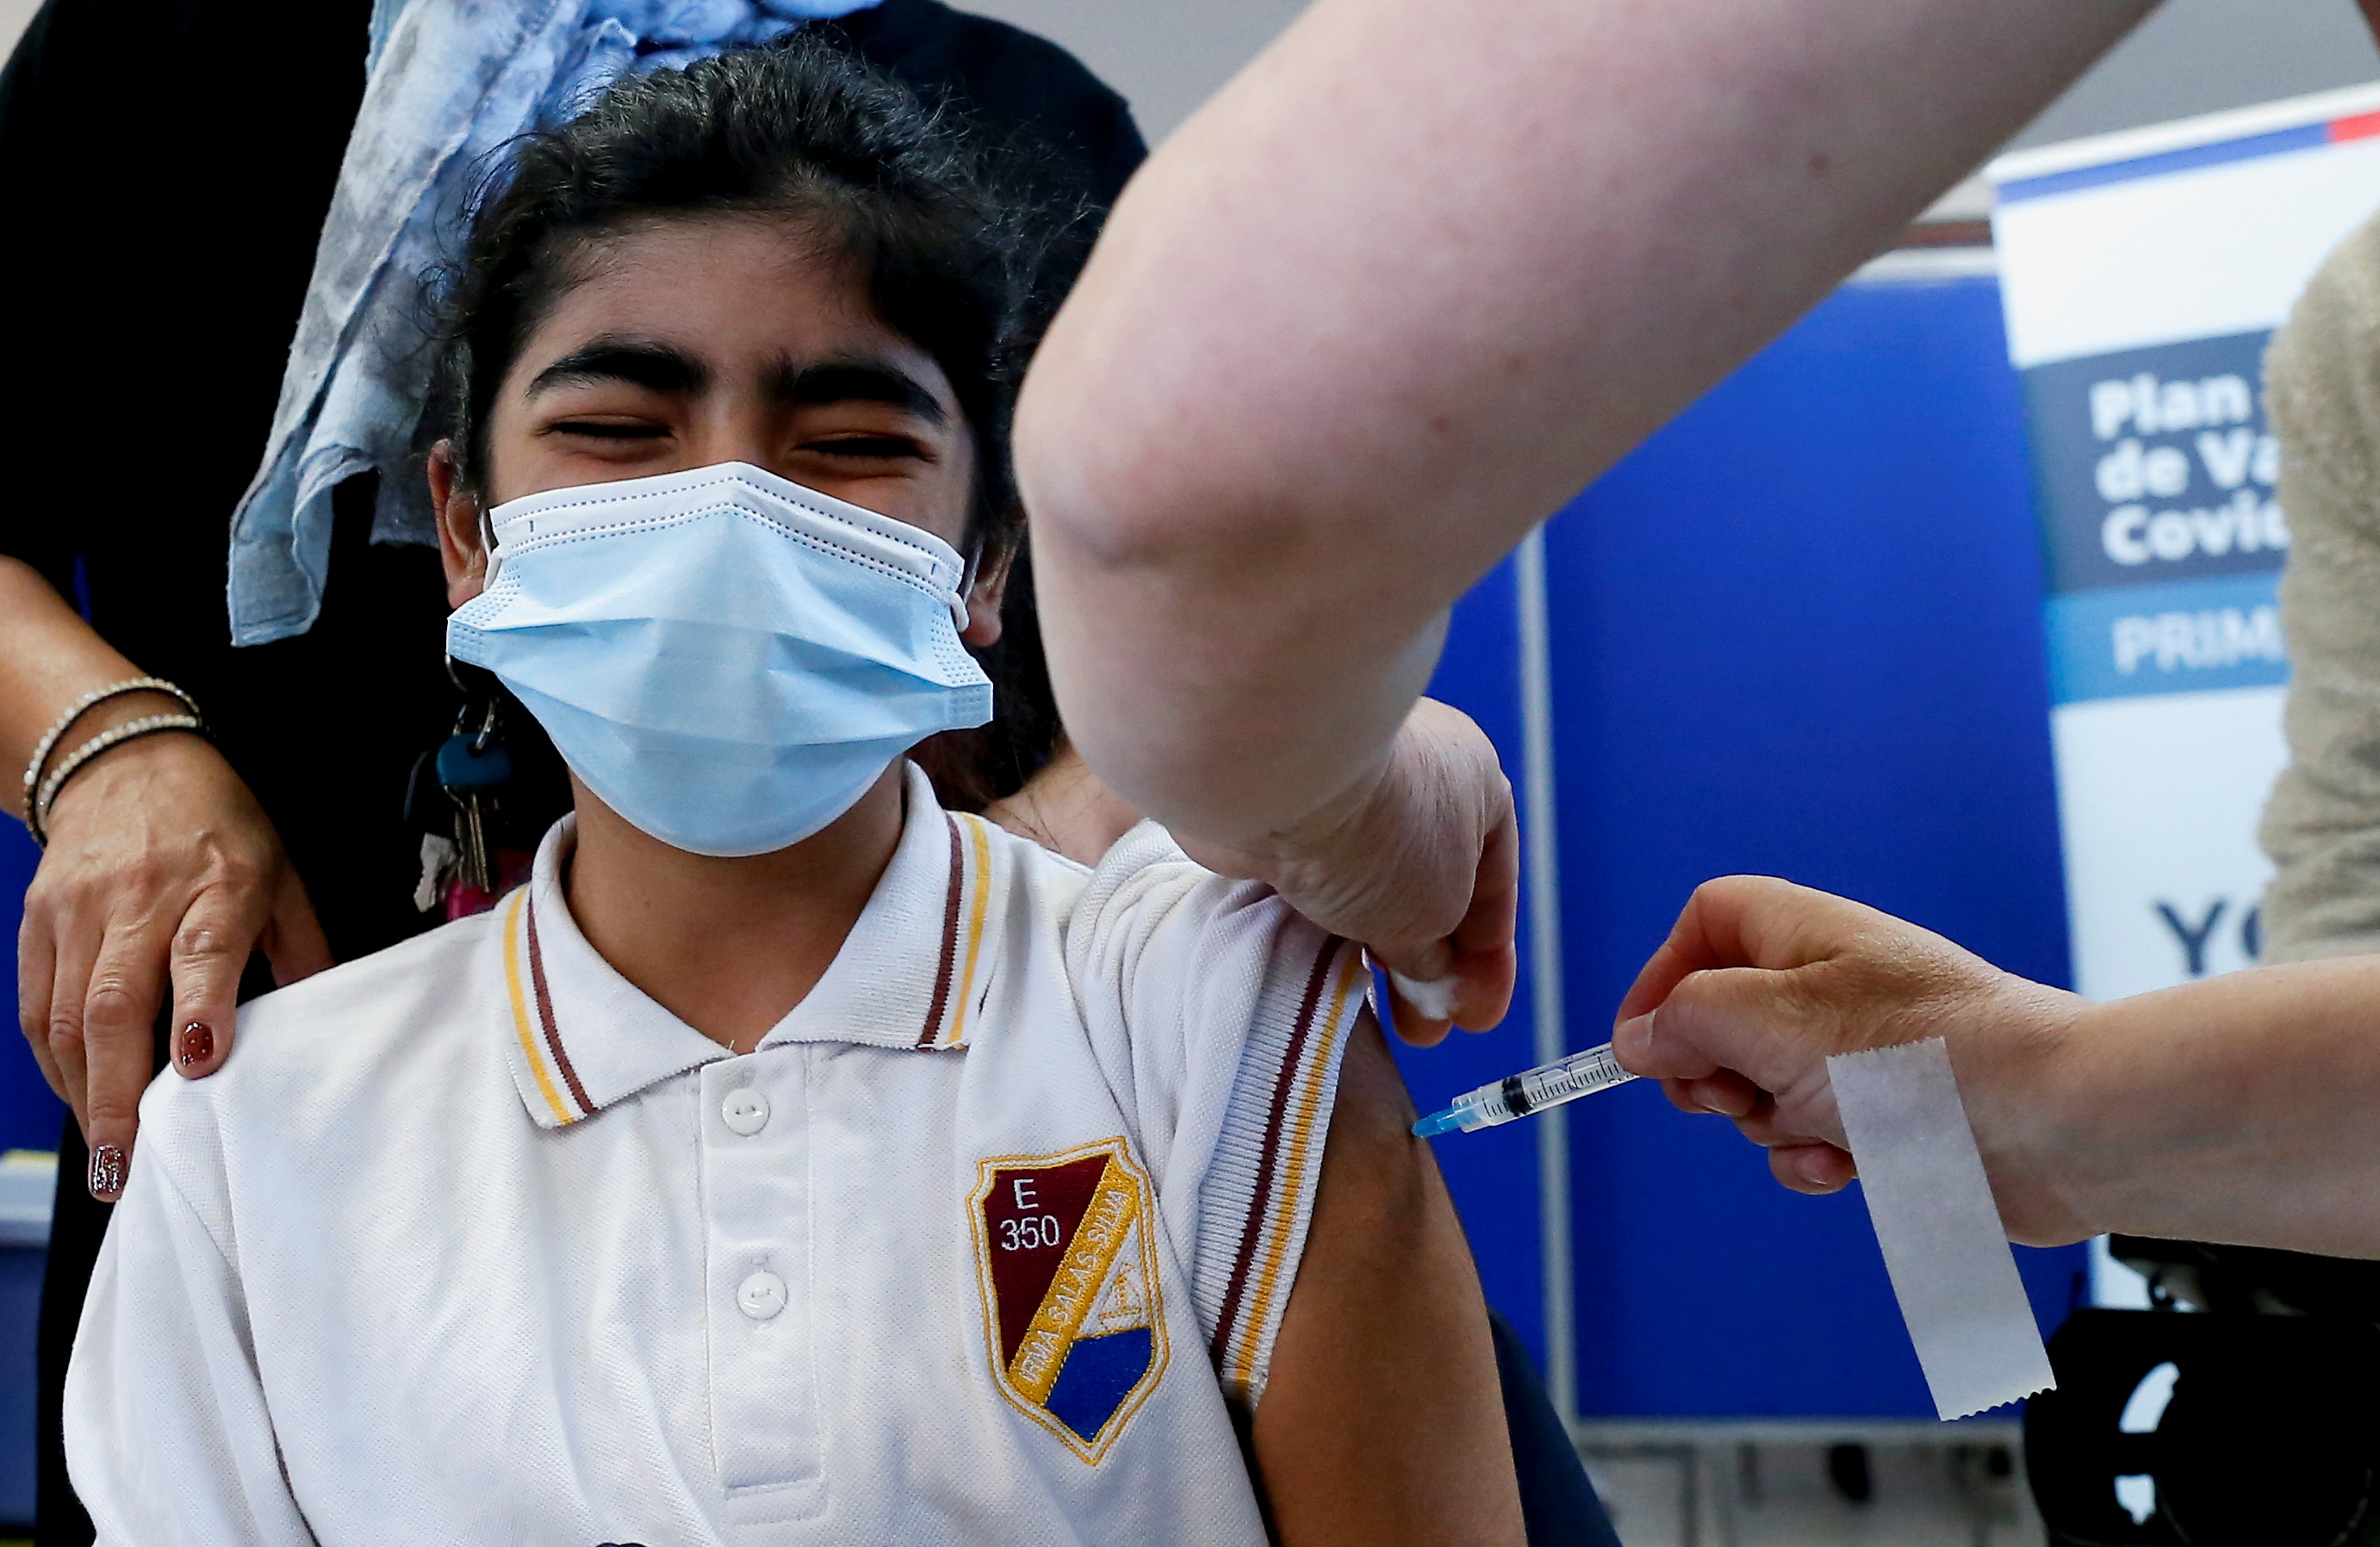 La vacuna de Sinopharm está basada en virus inactivados y fue aprobada por la OMS - REUTERS/Rodrigo Garrido